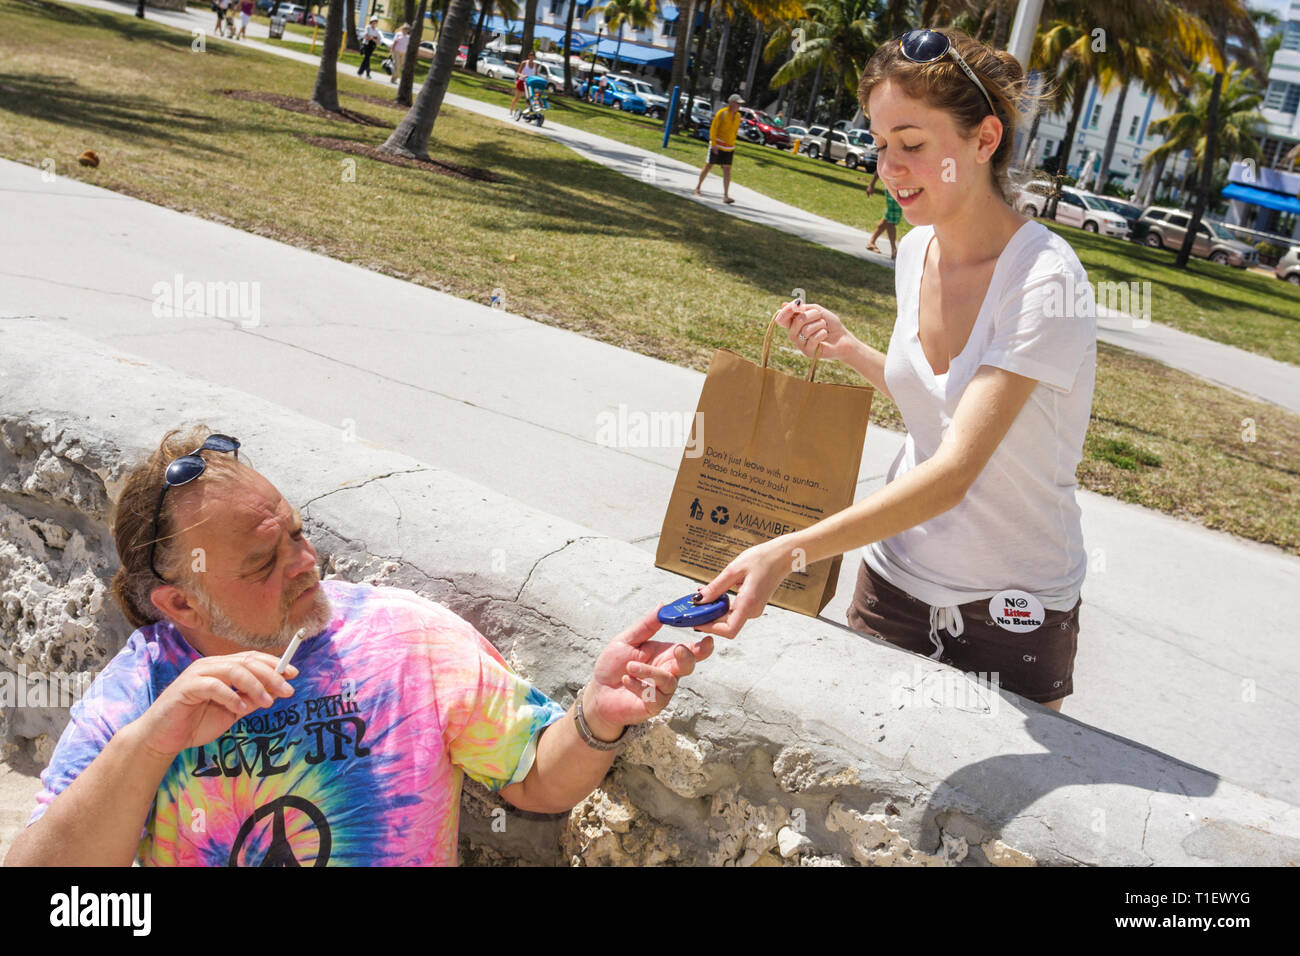 Miami Beach Florida, Lummus Park, kein Wurf, keine Butts, biologisch abbaubarer Müllbeutel, tragbare Aschenbecher, Verschmutzung, Aufräumen, Bewusstsein, Aktivist, Mann Männer, Mädchen g Stockfoto